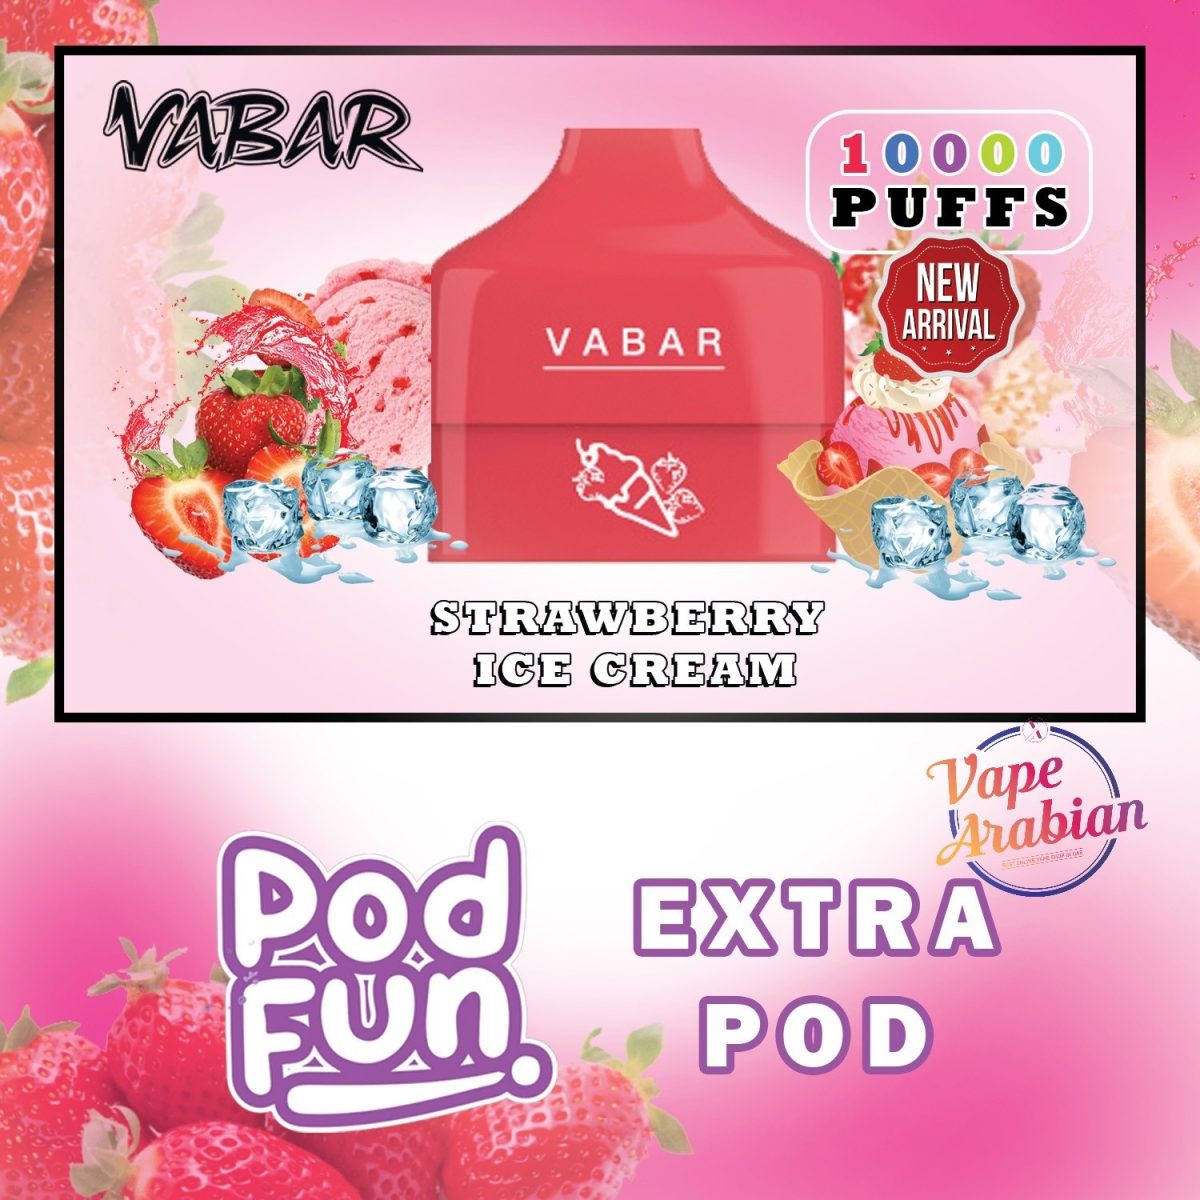 Vabar Pod Fun Extra Pod 10000 Puffs In UAE